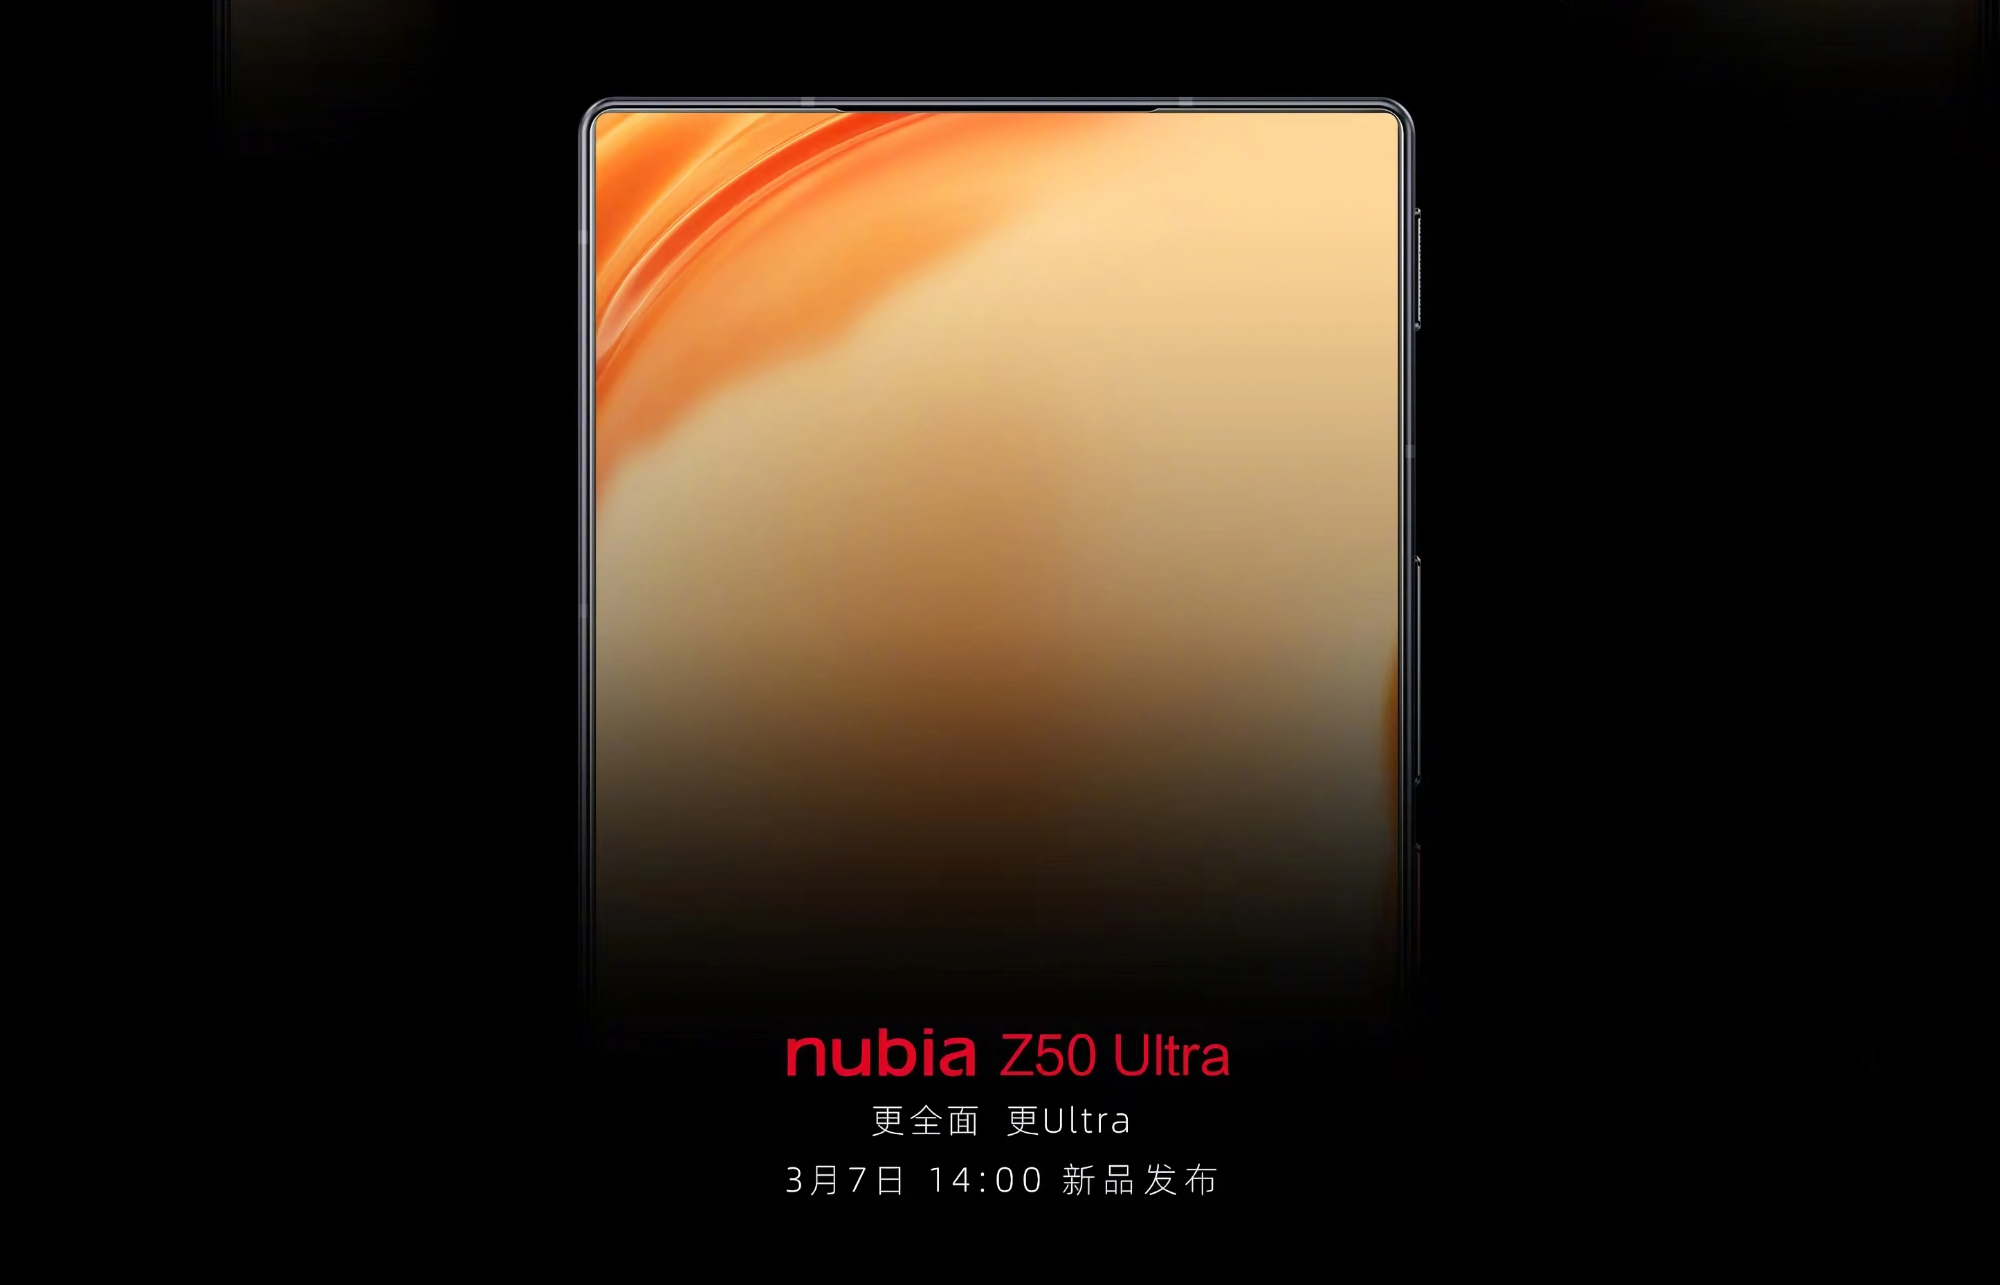 Ya es oficial: El Nubia Z50 Ultra con pantalla plana, bisel delgado y cámara bajo la pantalla se presentará el 7 de marzo